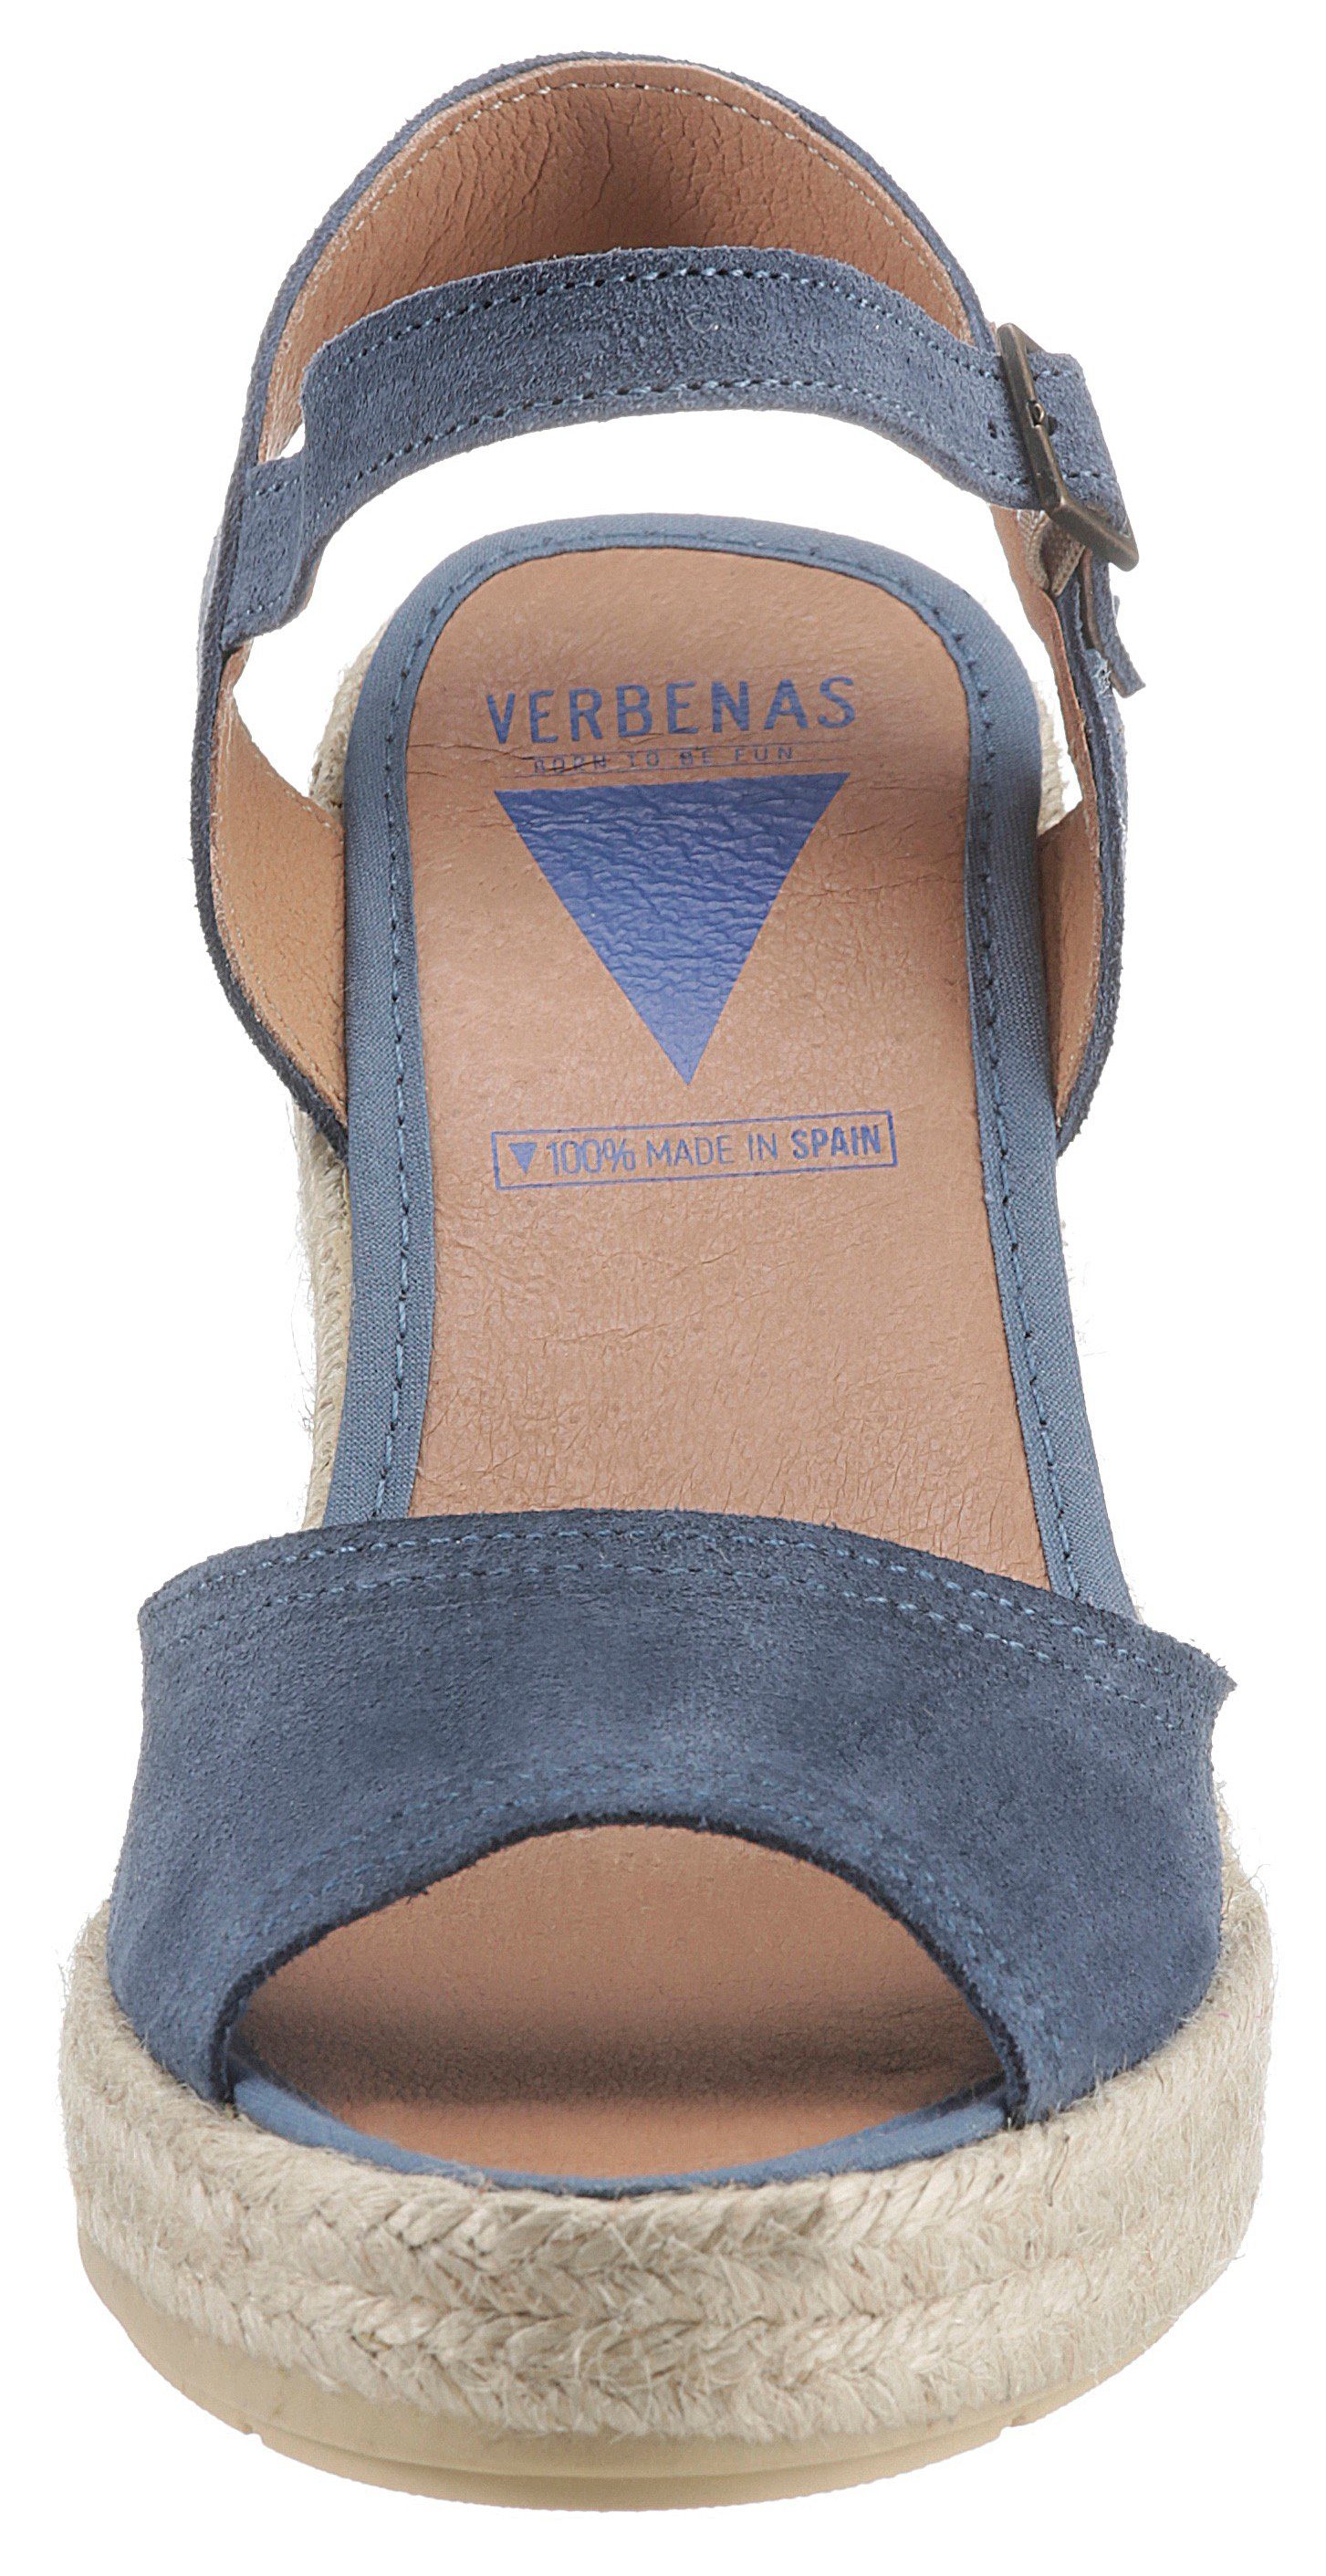 jeansblau Sardegna VERBENAS Sandalette Riemchen mit Sira verstellbarem